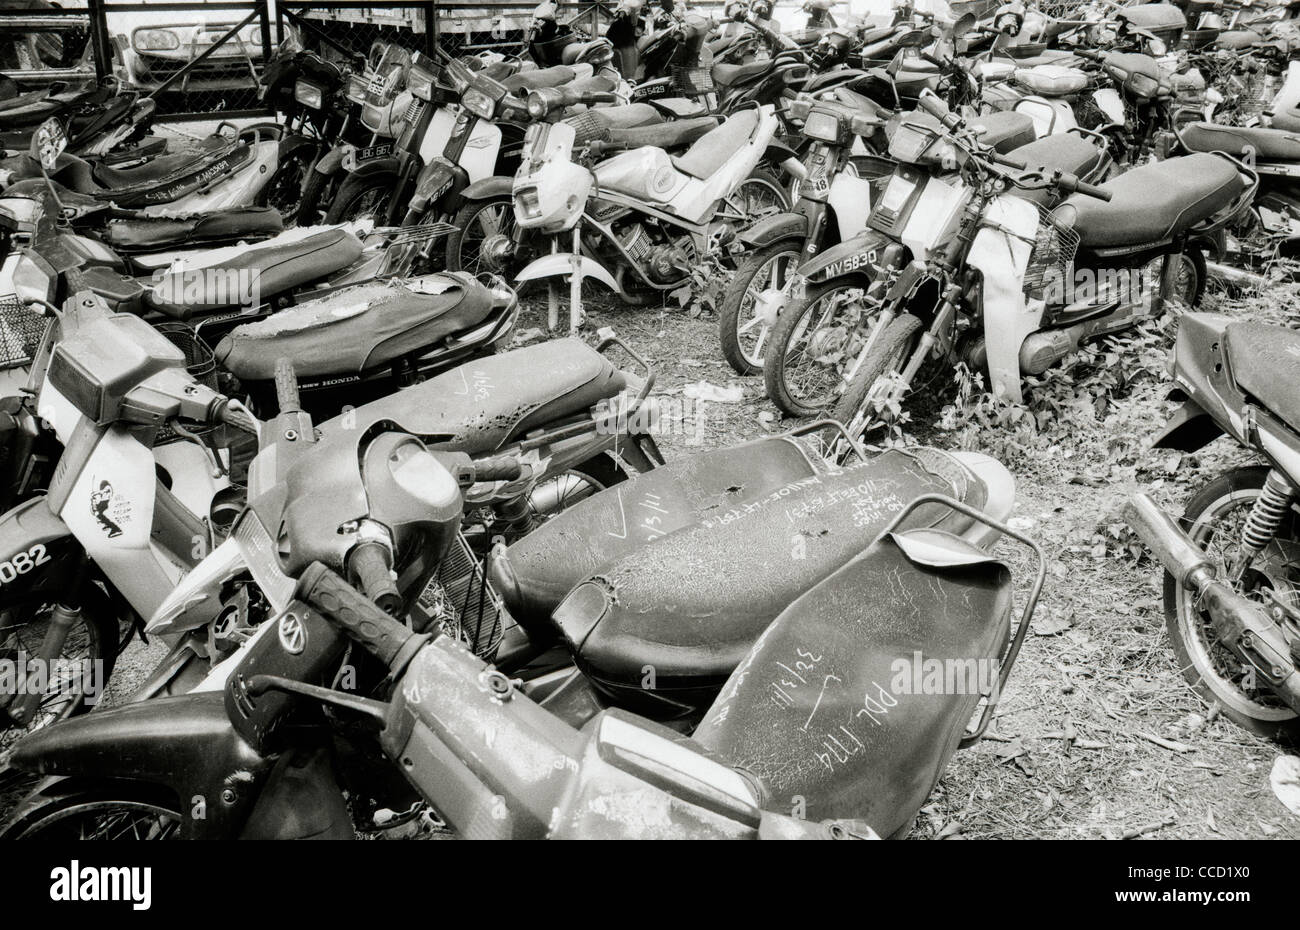 La photographie documentaire - Moto casse à Melaka Malacca en Malaisie en  Asie du Sud-Est Extrême-Orient. Vespa cyclomoteur Recyclable Recyclage  Photo Stock - Alamy